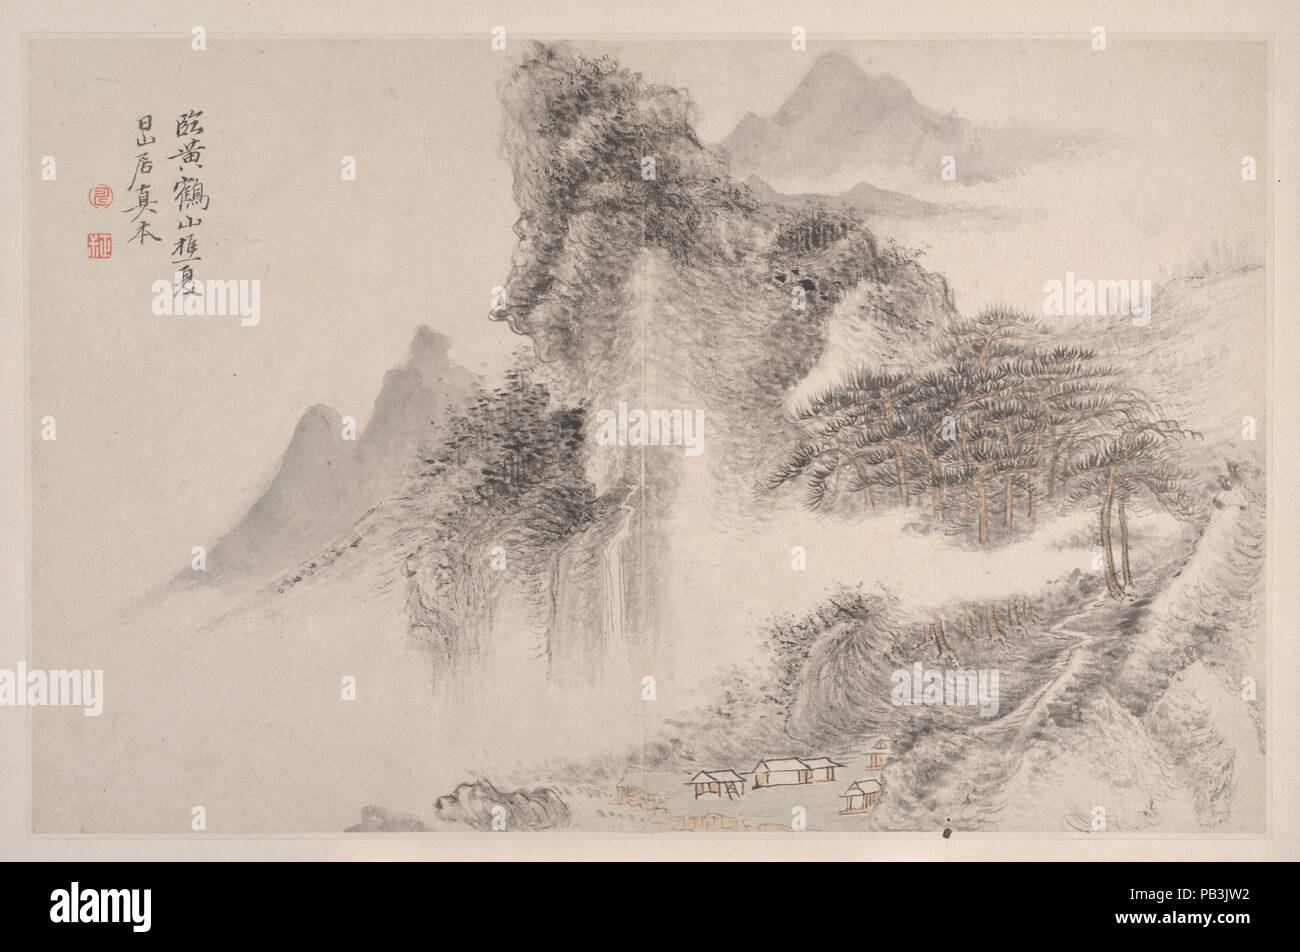 Paesaggi Nel modo song e Yuan maestri. Artista: Yun Shouping (Cinese, 1633-1690). Cultura: la Cina. Dimensioni: 10 5/8 x 15 5/8 in. (27 x 39,7 cm). Data: 1667. Yun Shouping era un membro della ristretta cerchia di artisti che compone i primi Qing movimento ortodosso. Il pupillo di 'Quattro Wangs', ha guadagnato la loro ammirazione per la sensibilità della sua gestione a spazzola che è stato detto di aver superato anche quella del suo contemporaneo e intimo amico Wang Hui (1632-1717). Questo paesaggio album, uno di Yun le prime opere datate, rivali il suo elegante fiore dipinti nella squisita delicatezza del Foto Stock